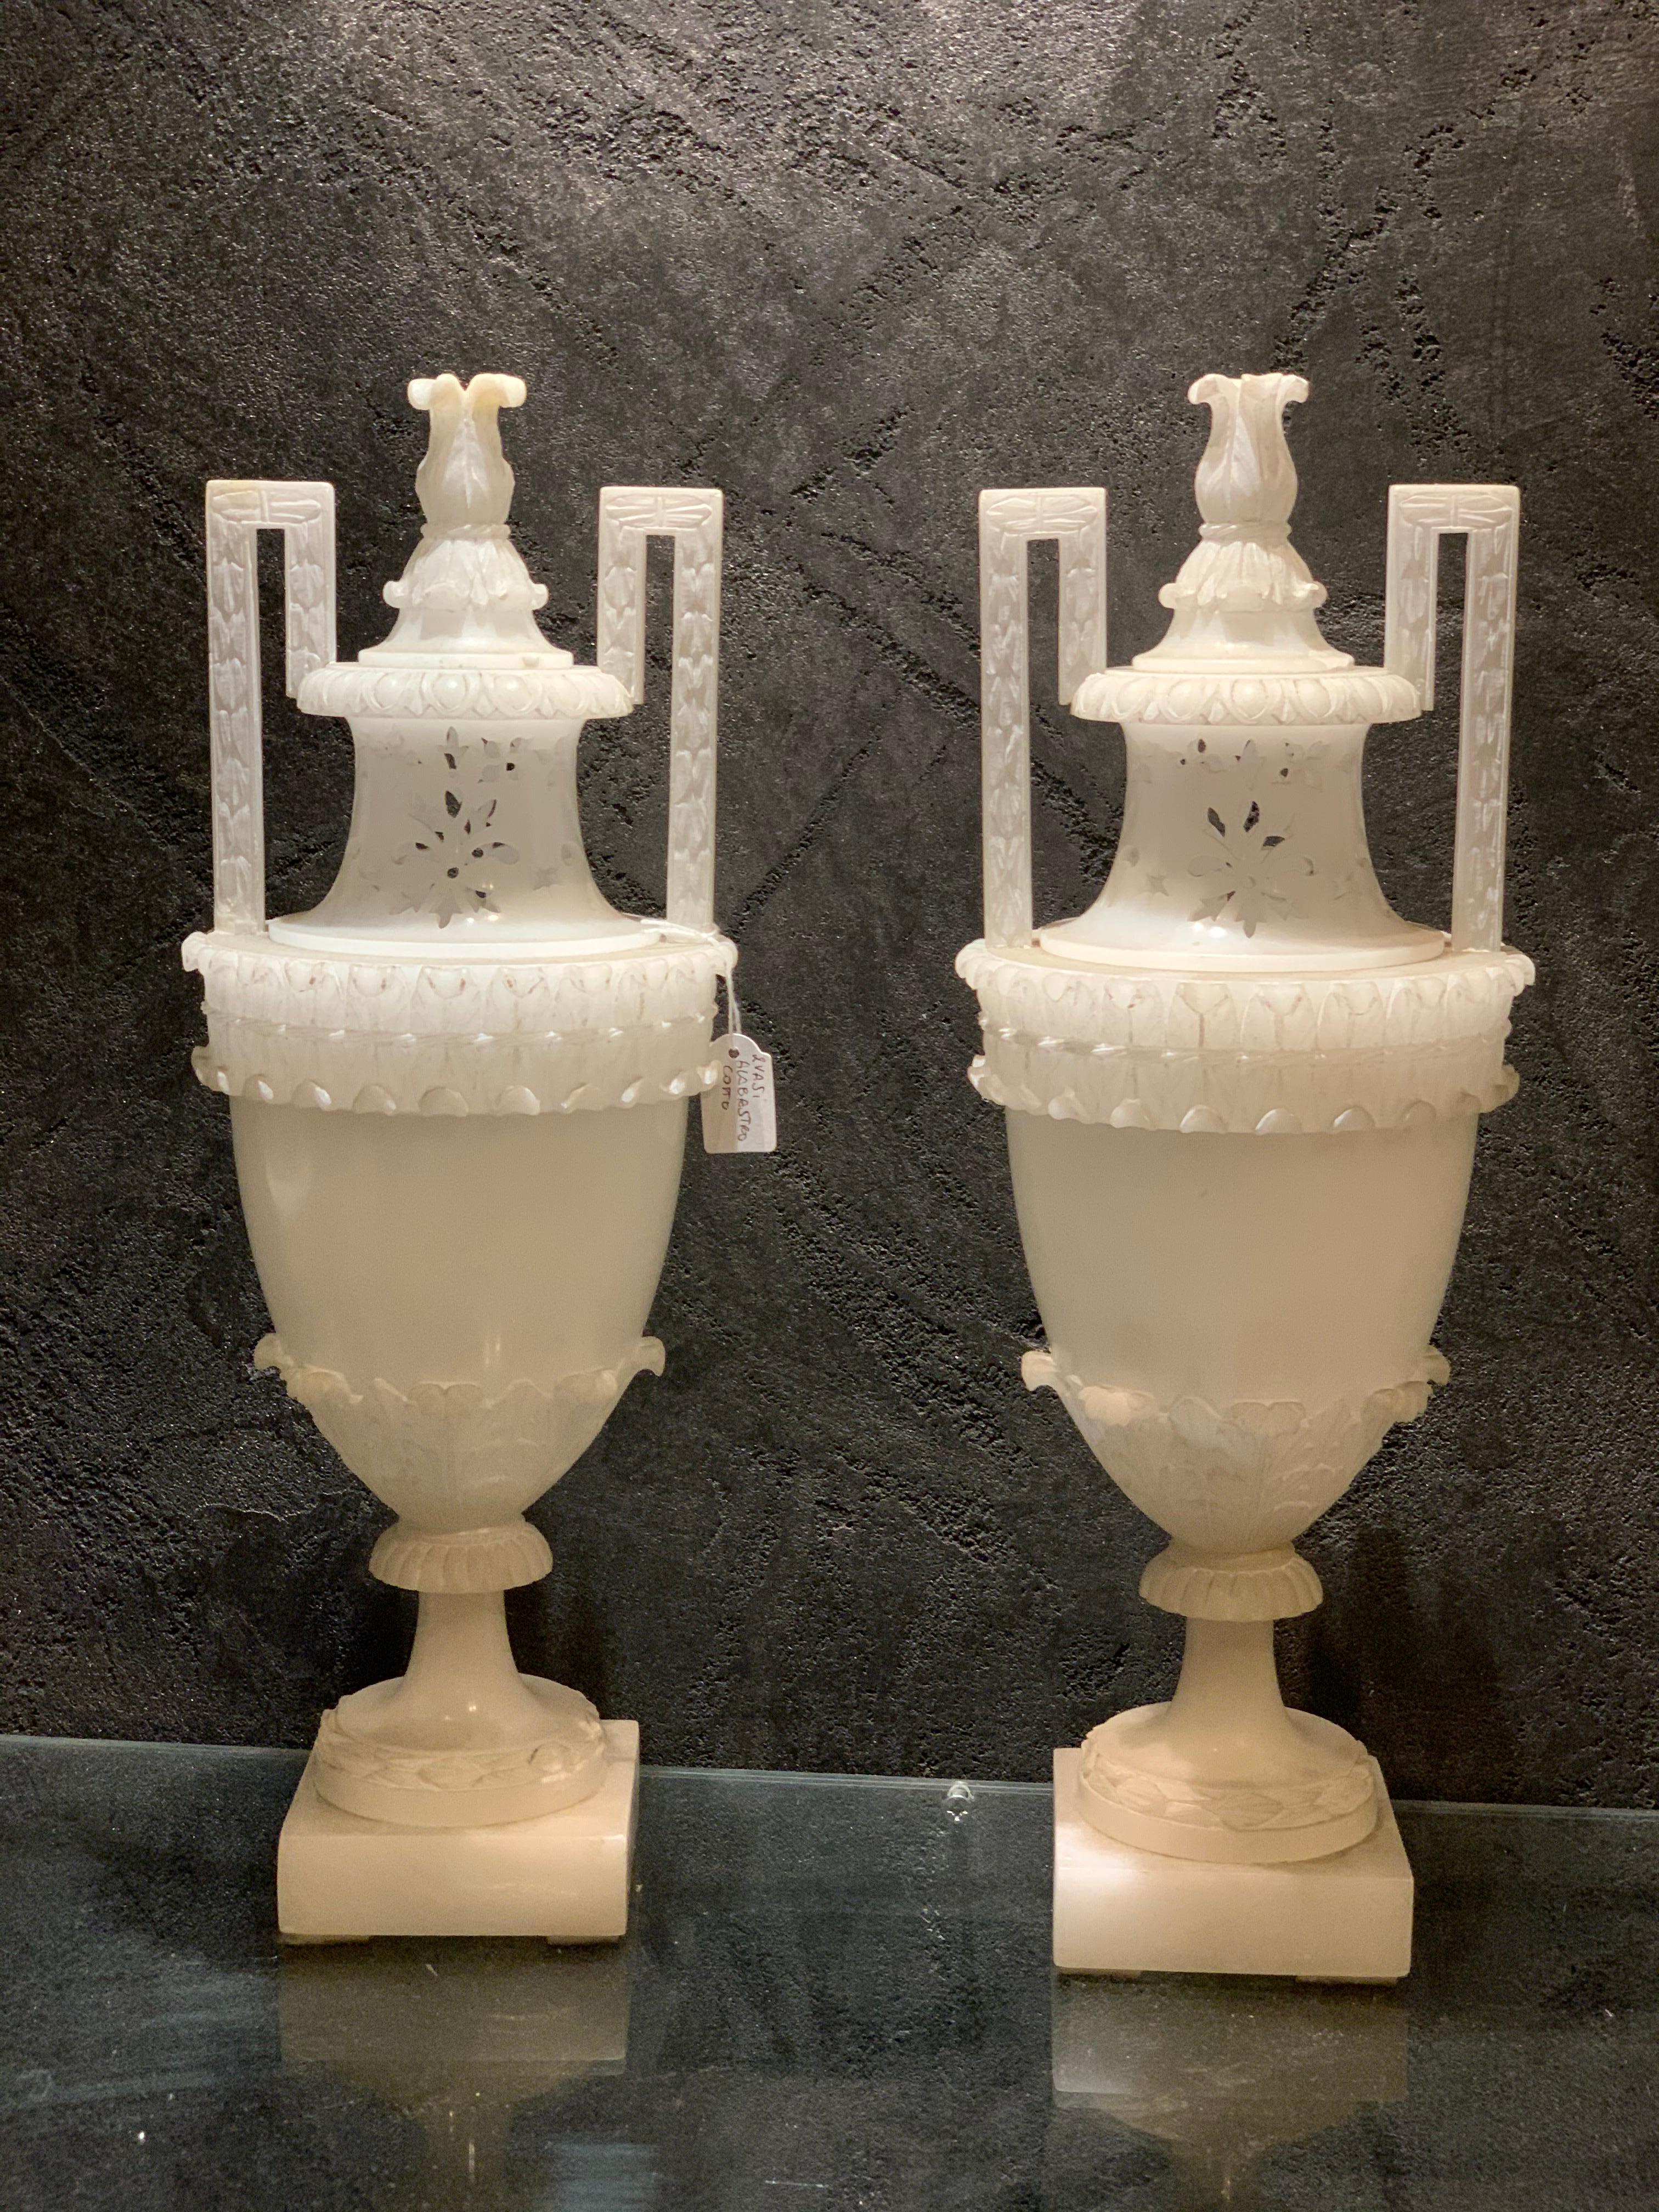 Elegantes Paar Amphora-Vasen mit Deckeln, die als Räuchergefäße dienen. Sie sind mit feinen Durchbrüchen versehen, um Düfte zu verströmen, und bestehen vollständig aus gekochtem Alabaster, der gekocht wurde, um sie weißer zu machen.
Dieses